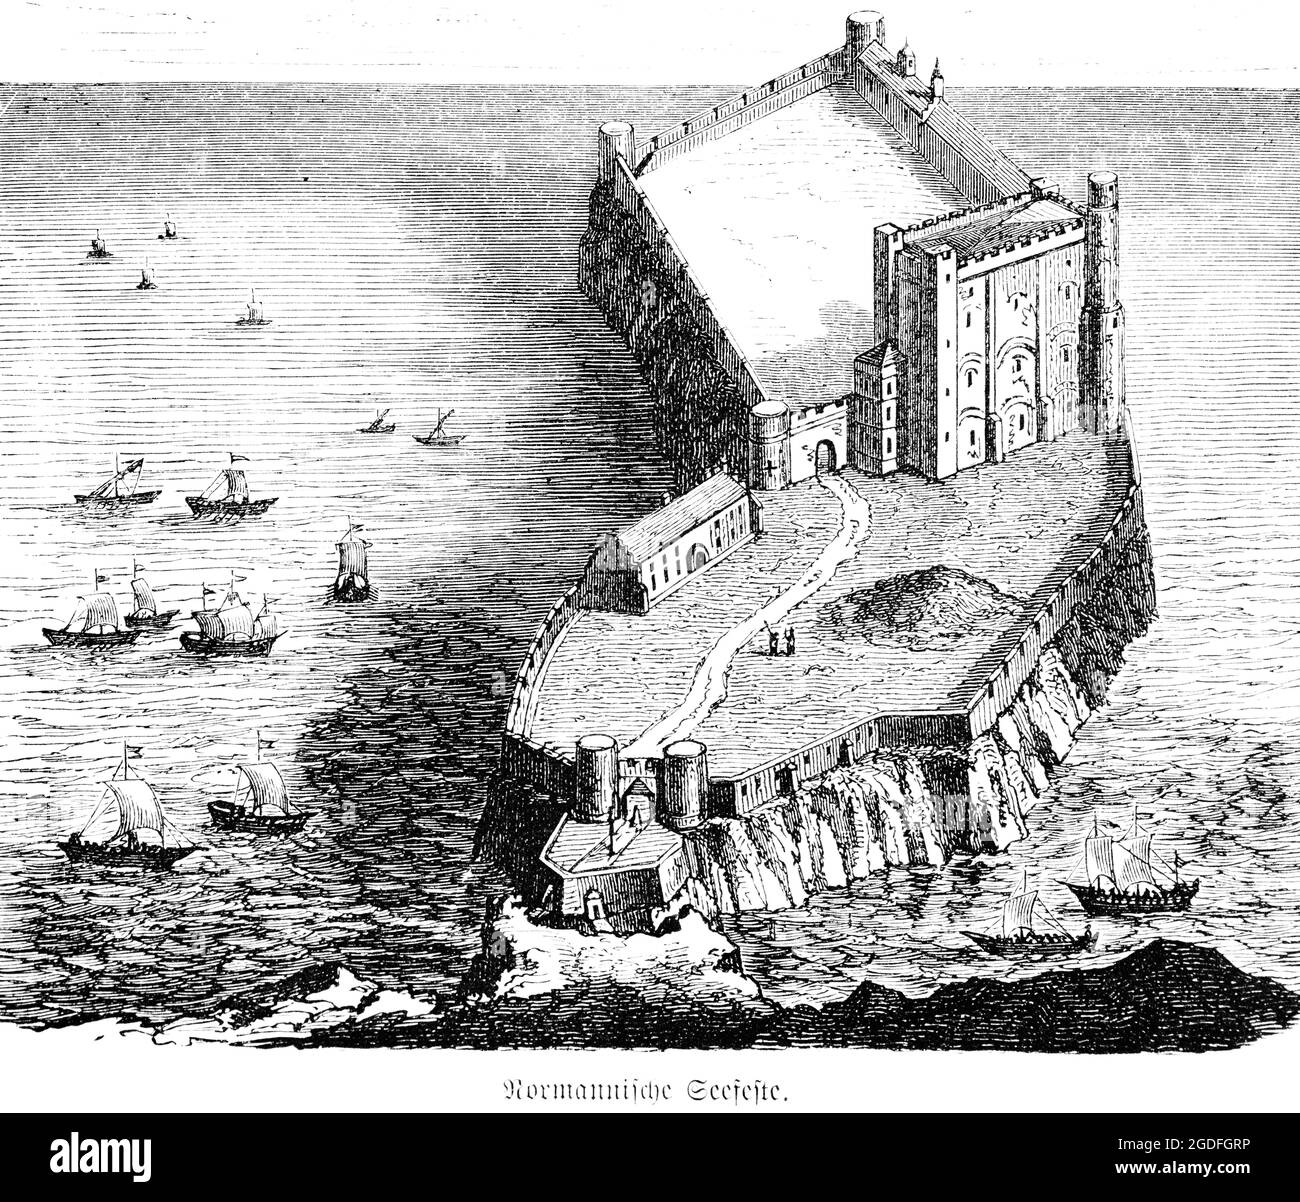 Une forteresse normande dans la mer au début du Moyen âge, illustration historique 1881 Banque D'Images